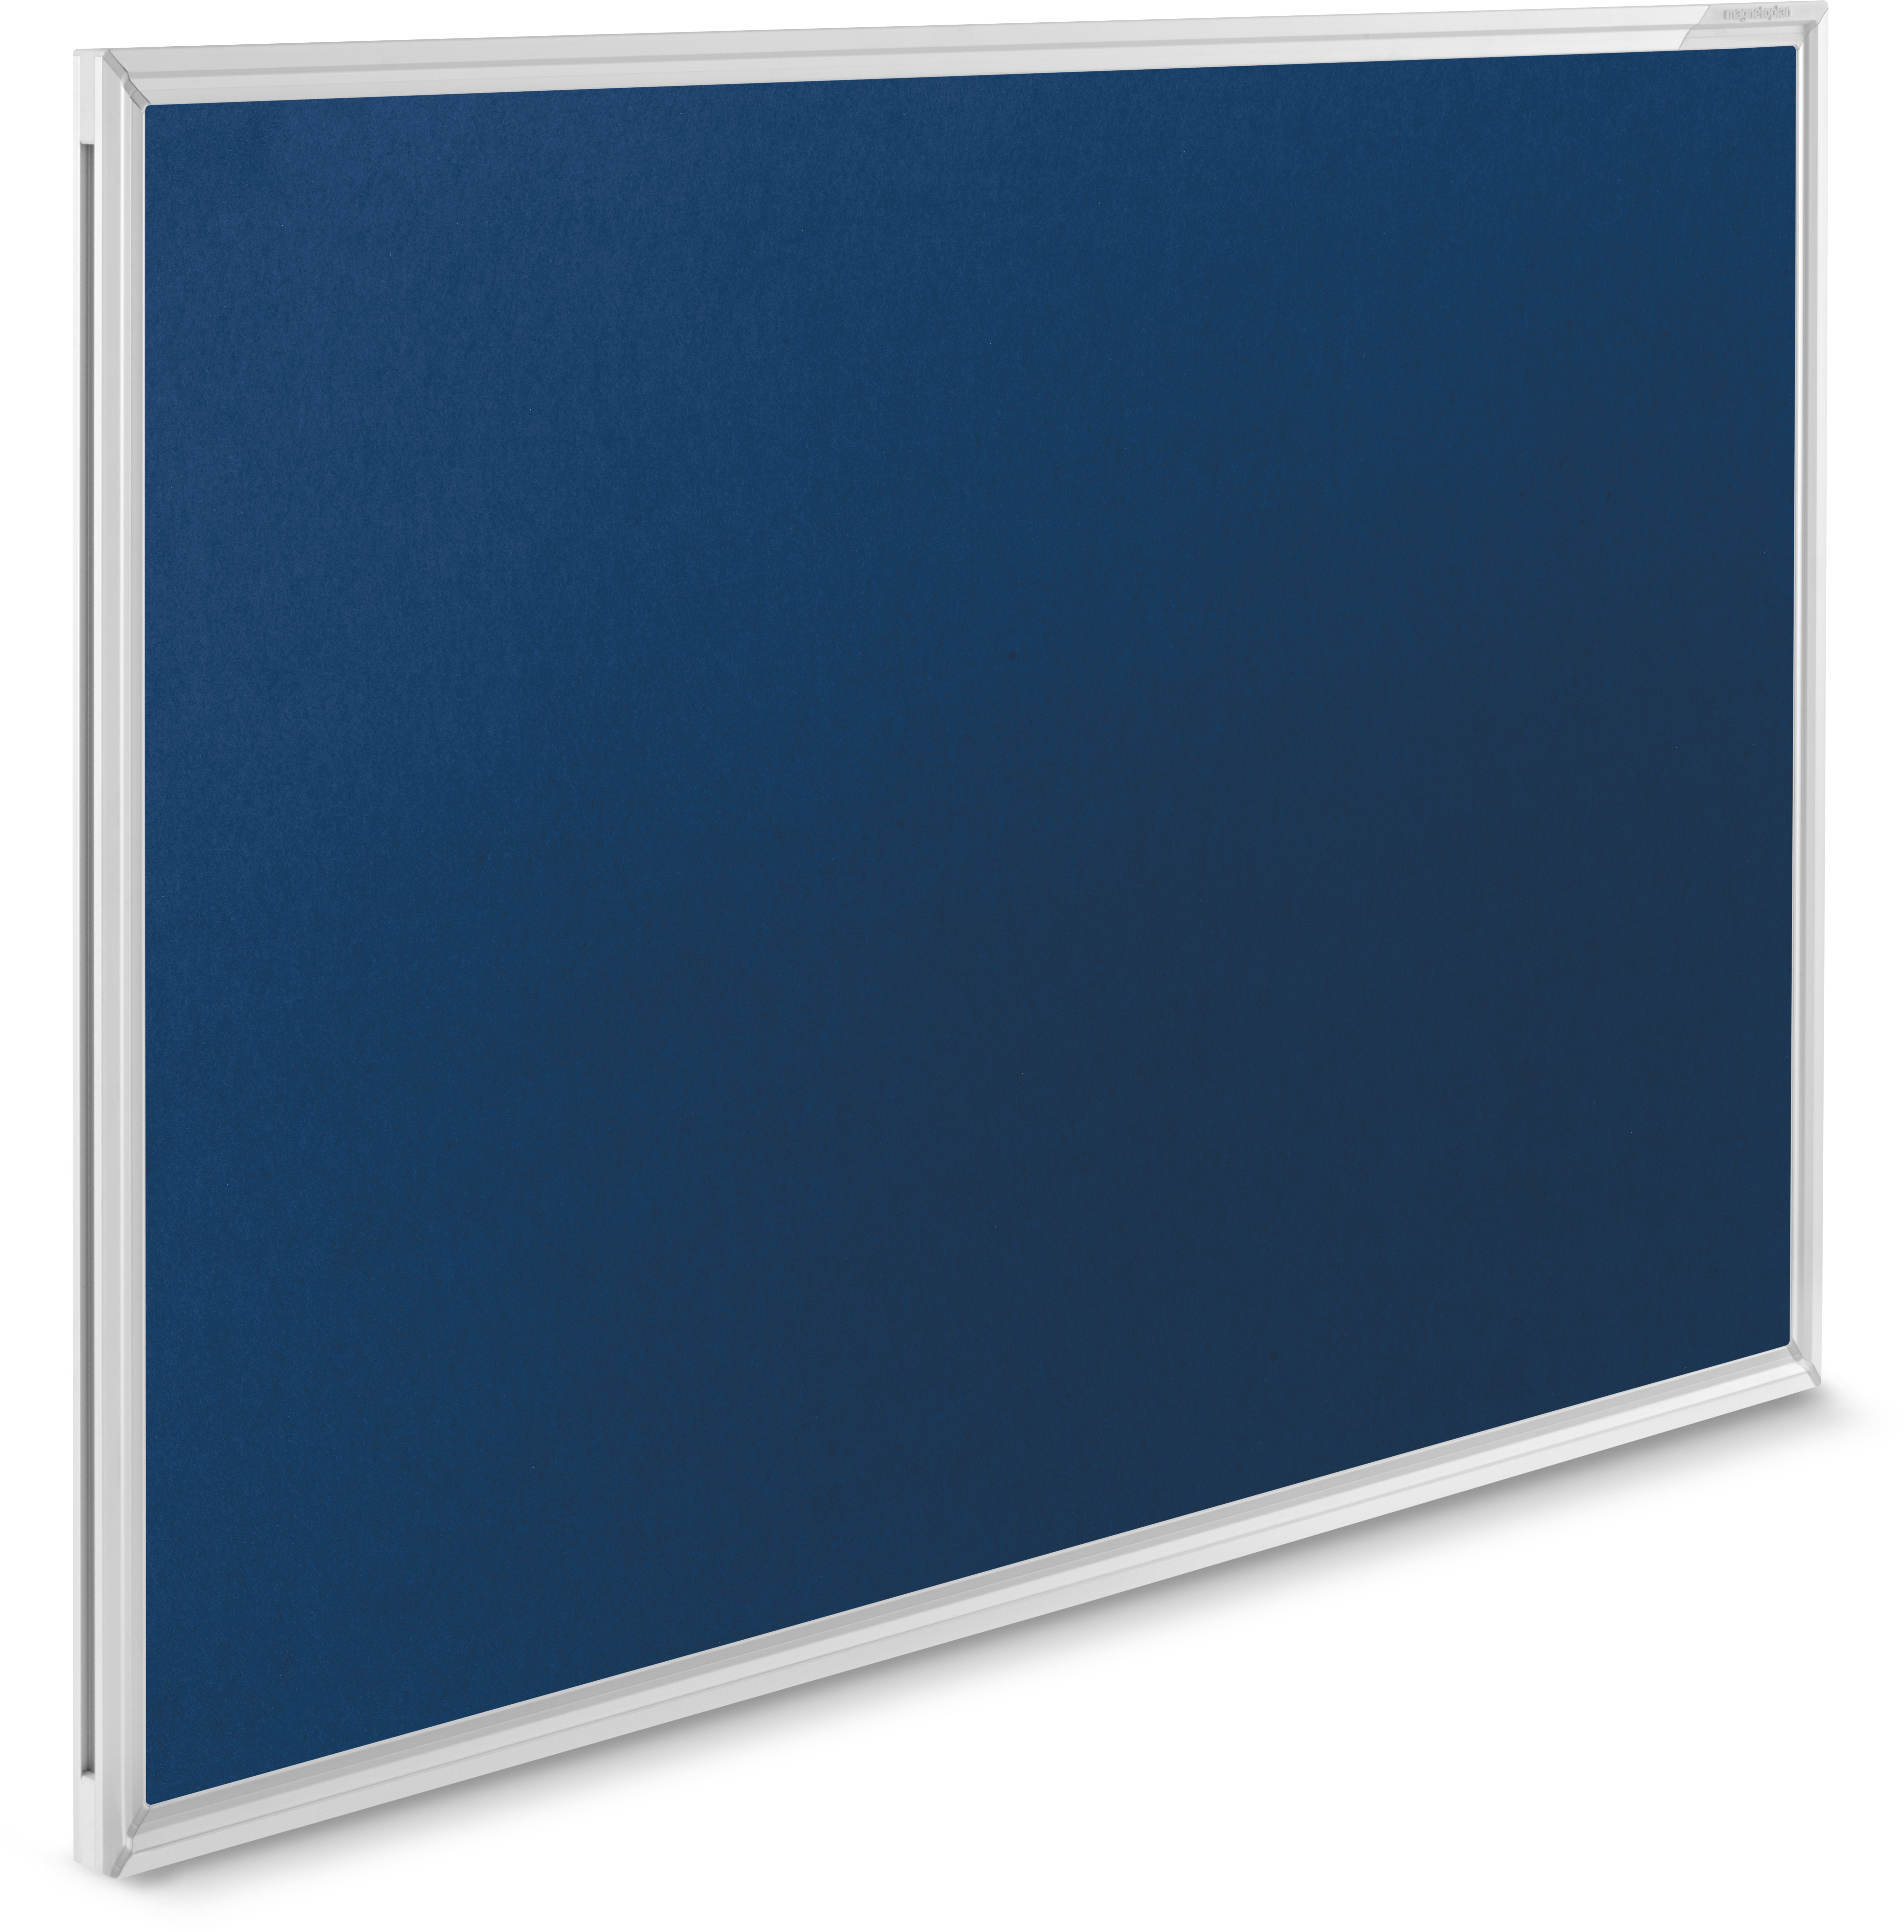 MAGNETOPLAN Design-Pinnboard SP 1412003 bleu, feutre 1200x900mm